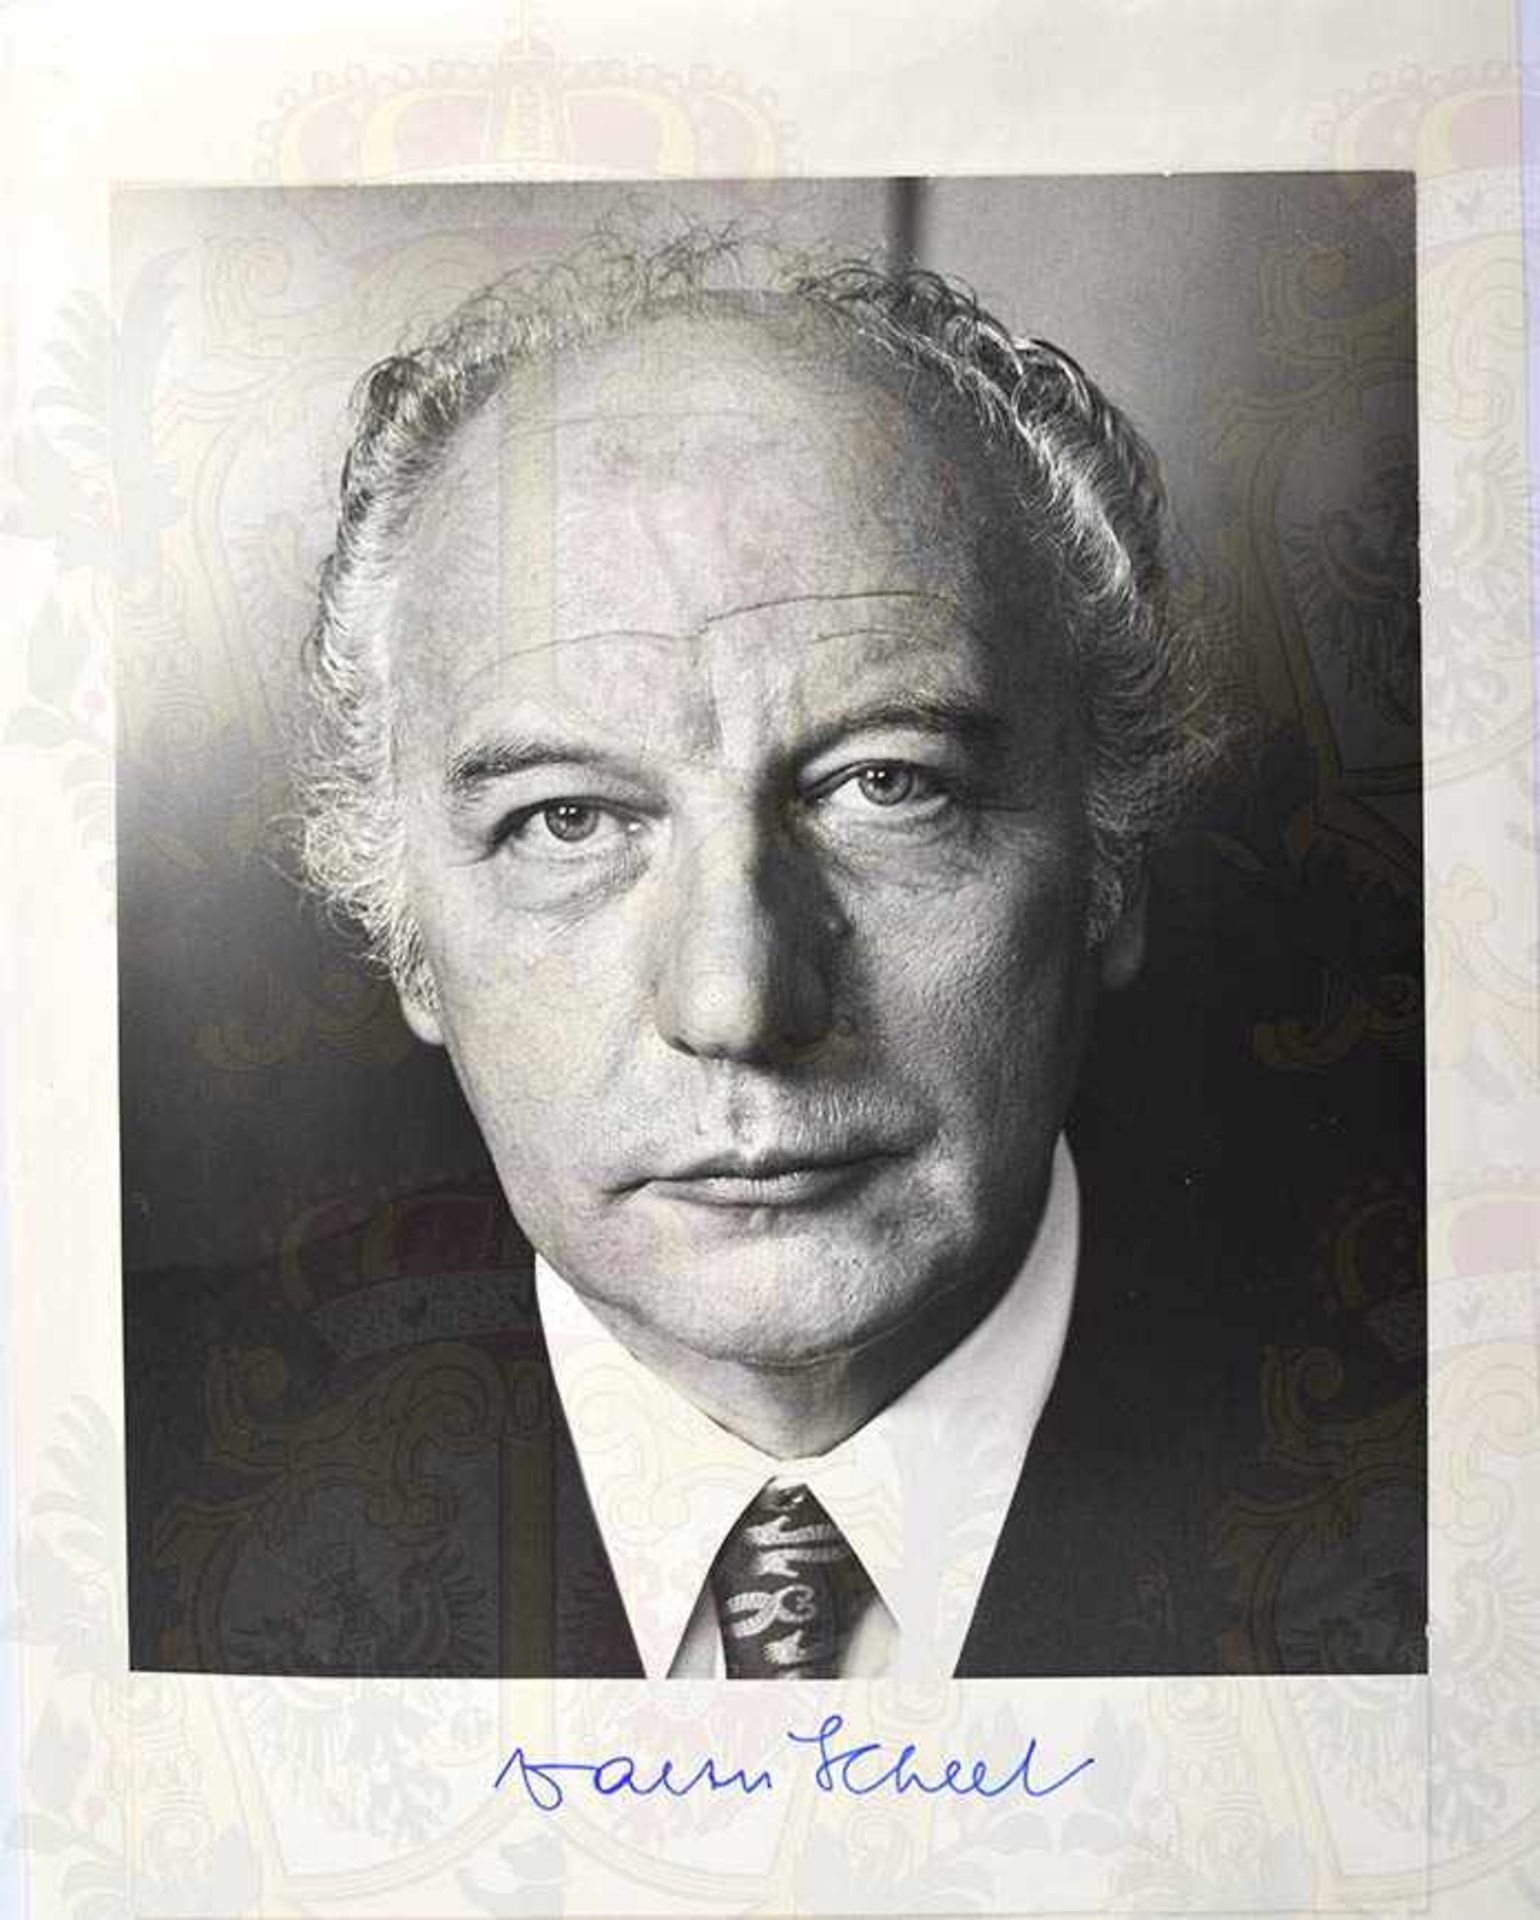 SAMMLUNG AUTOGRAPHEN, 30 Stück, deutsche und israelische Politiker, dabei: L. Erhard, W. Scheel, - Image 3 of 6